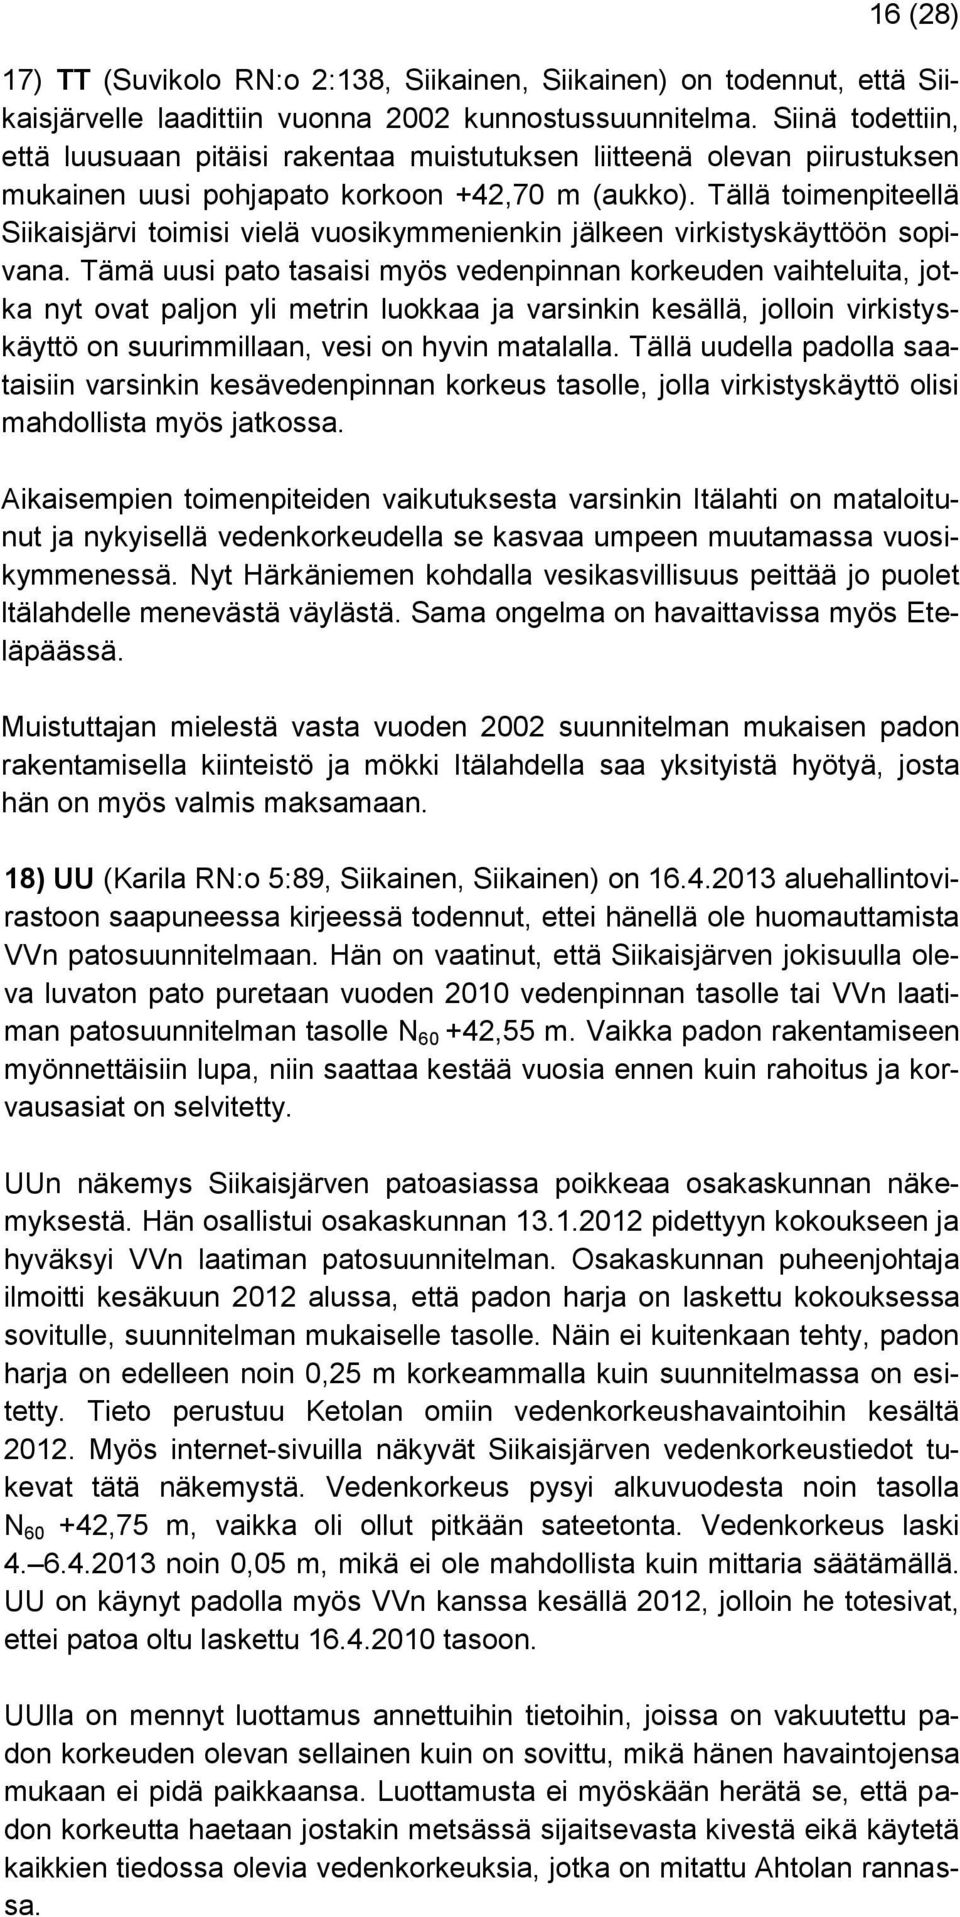 Tällä toimenpiteellä Siikaisjärvi toimisi vielä vuosikymmenienkin jälkeen virkistyskäyttöön sopivana.